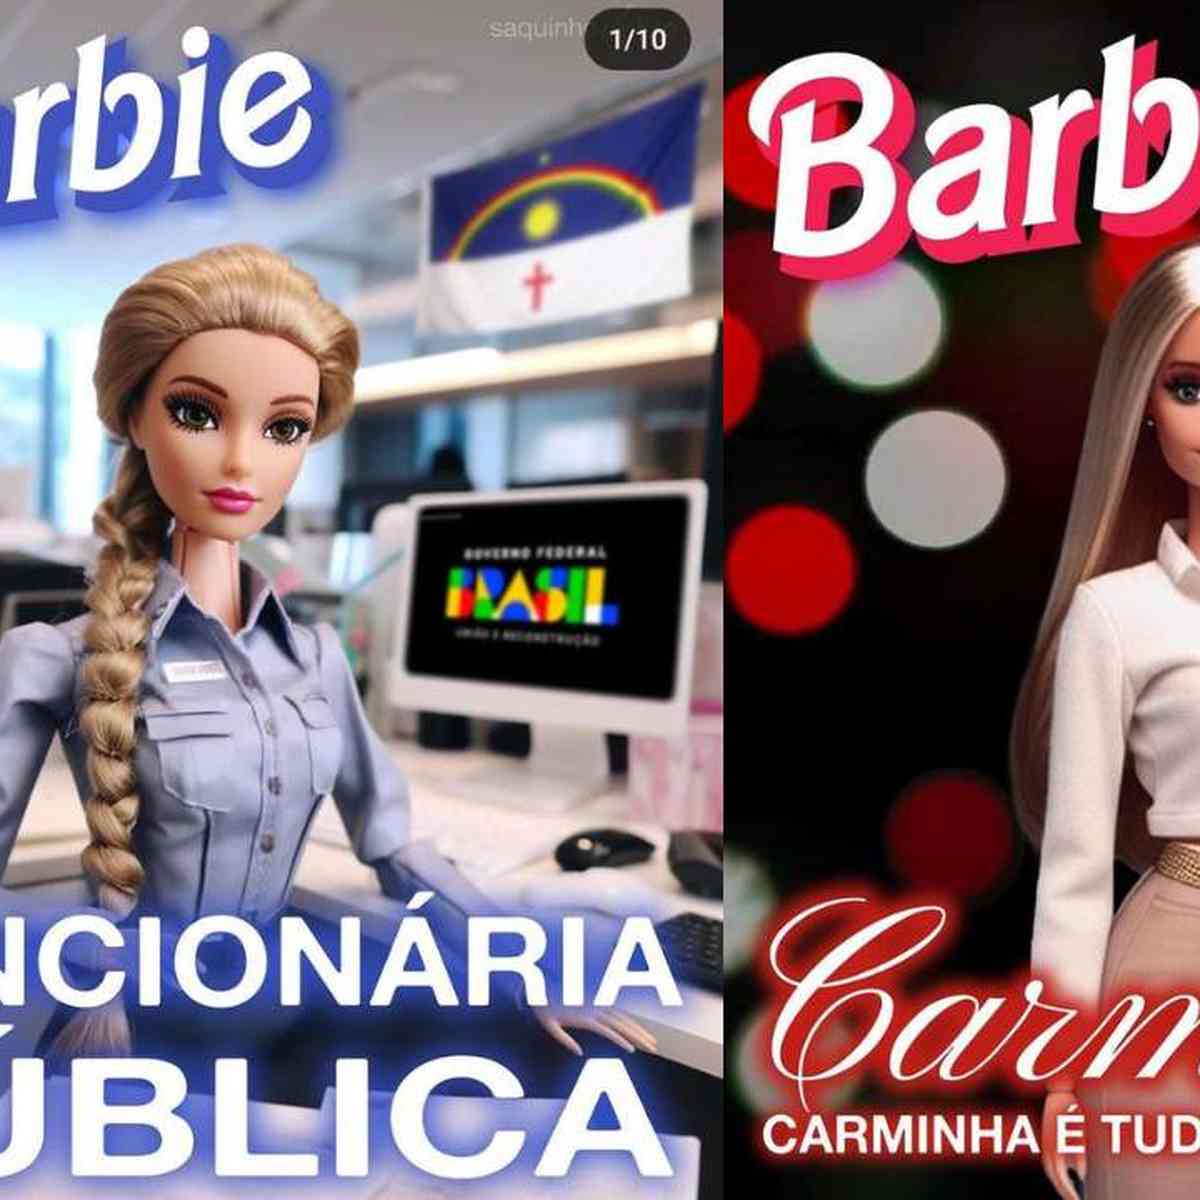 Barbie belo-horizontina: influenciadora mostra como seria a Barbie